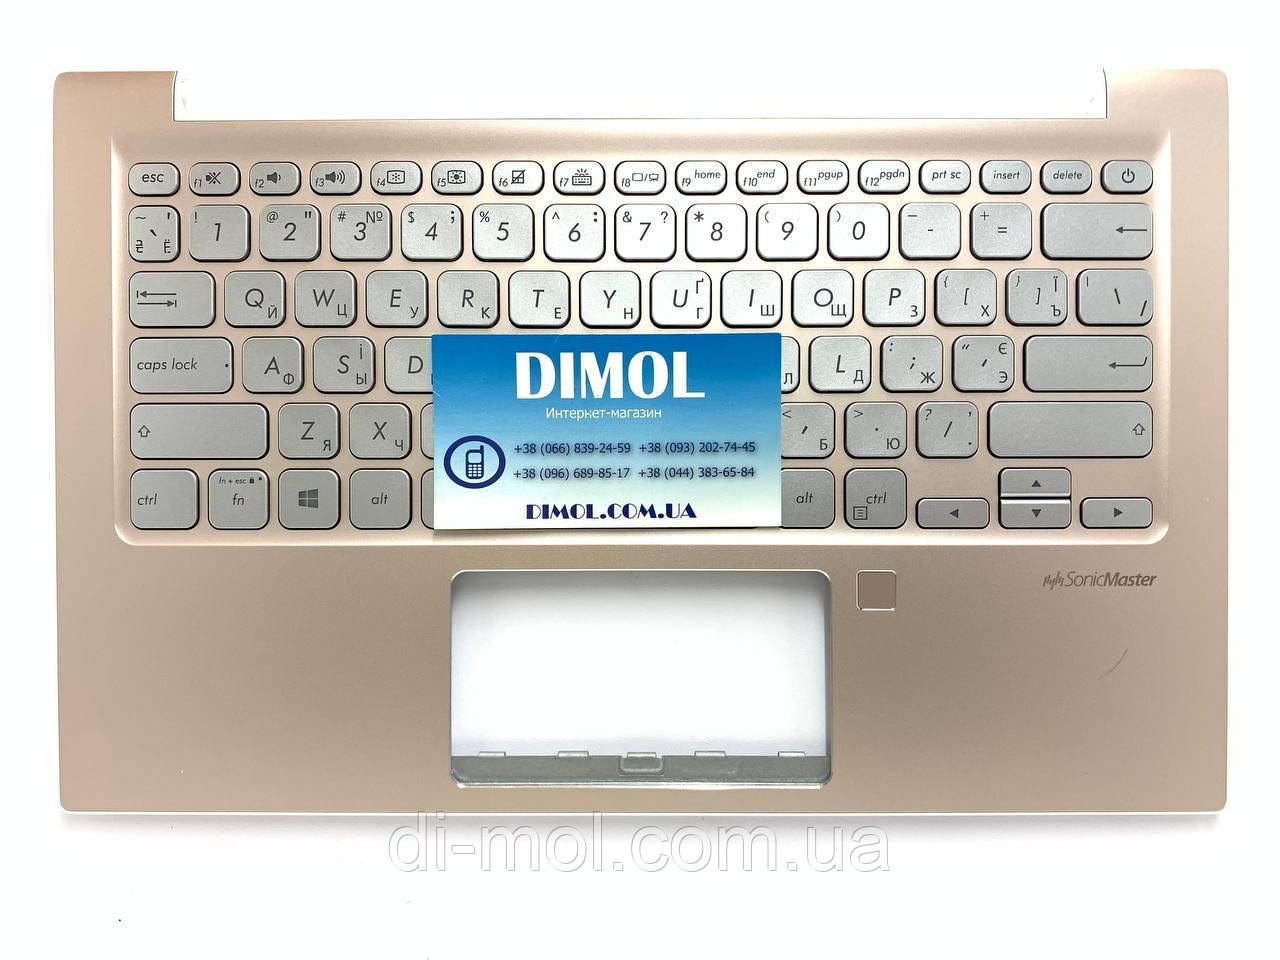 Оригінальна клавіатура для ноутбука Asus VivoBook S13 S330, S330U, S330F, X330U, S330UA, S330FA, S330FN silver, ukr, підсвічування